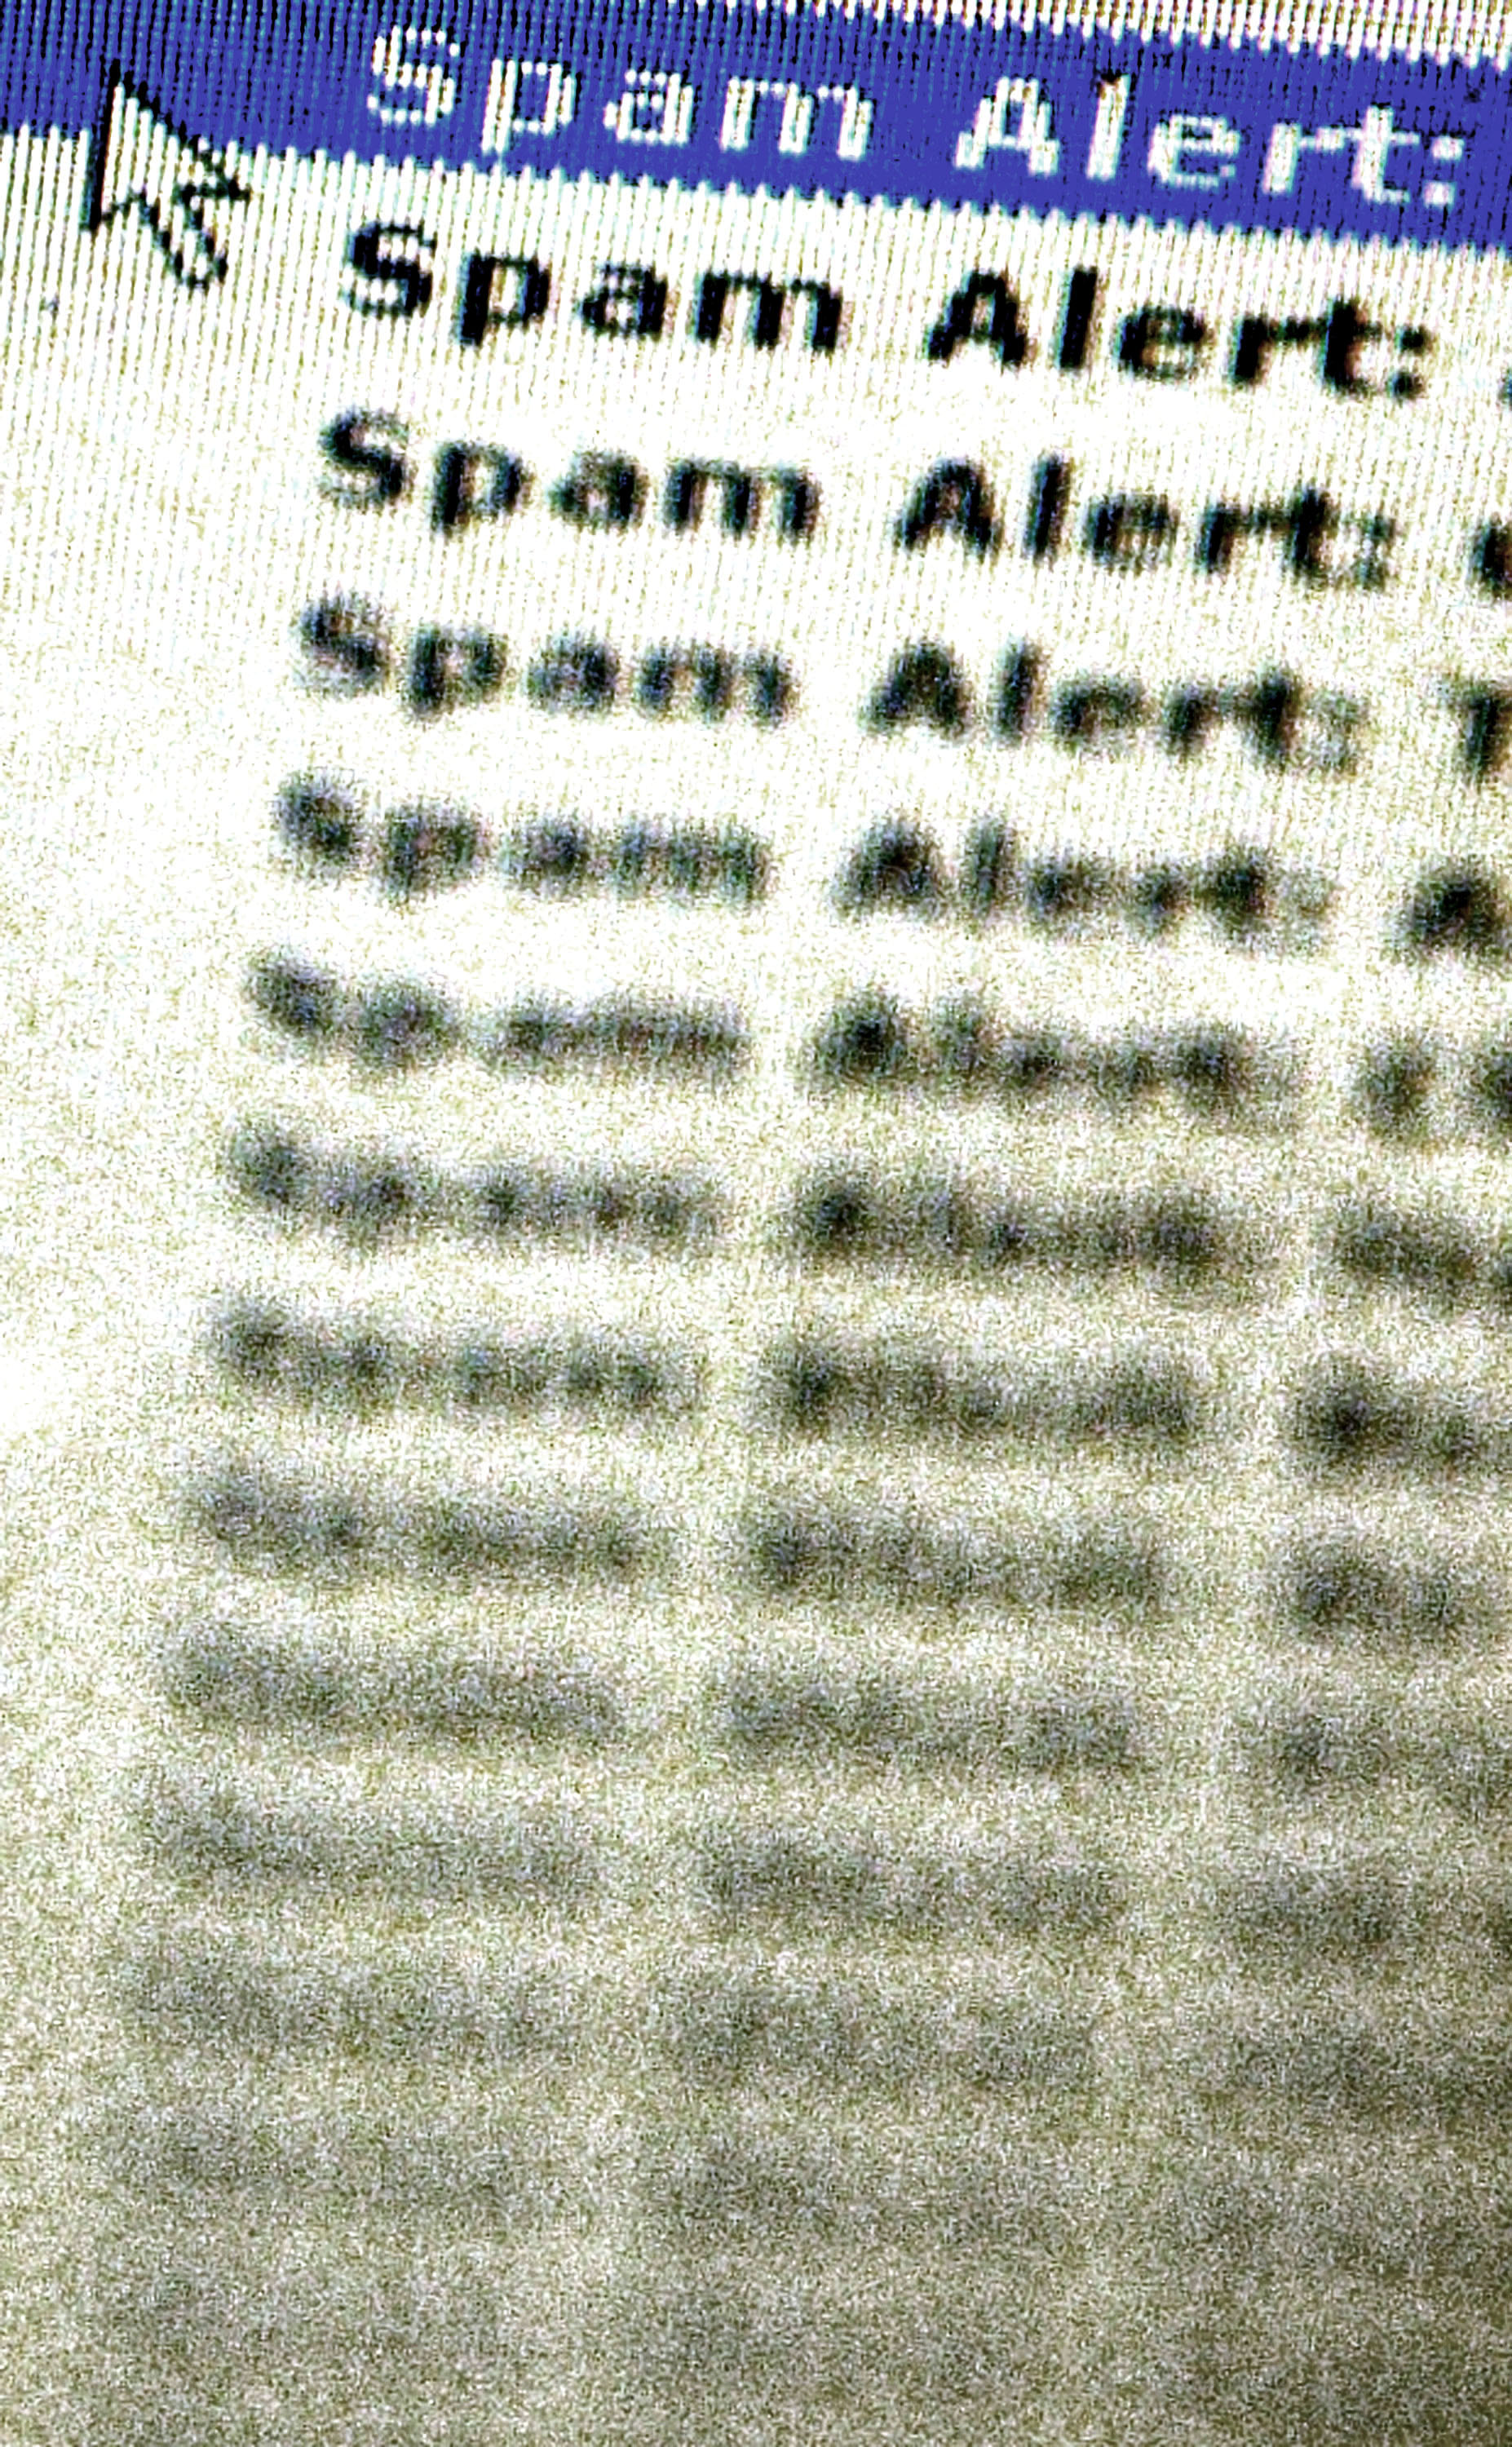 Атаката е срещу ”Спамхаус”, която помага на имейл провайдърите да отстраняват спама и друго нежелано съдържание